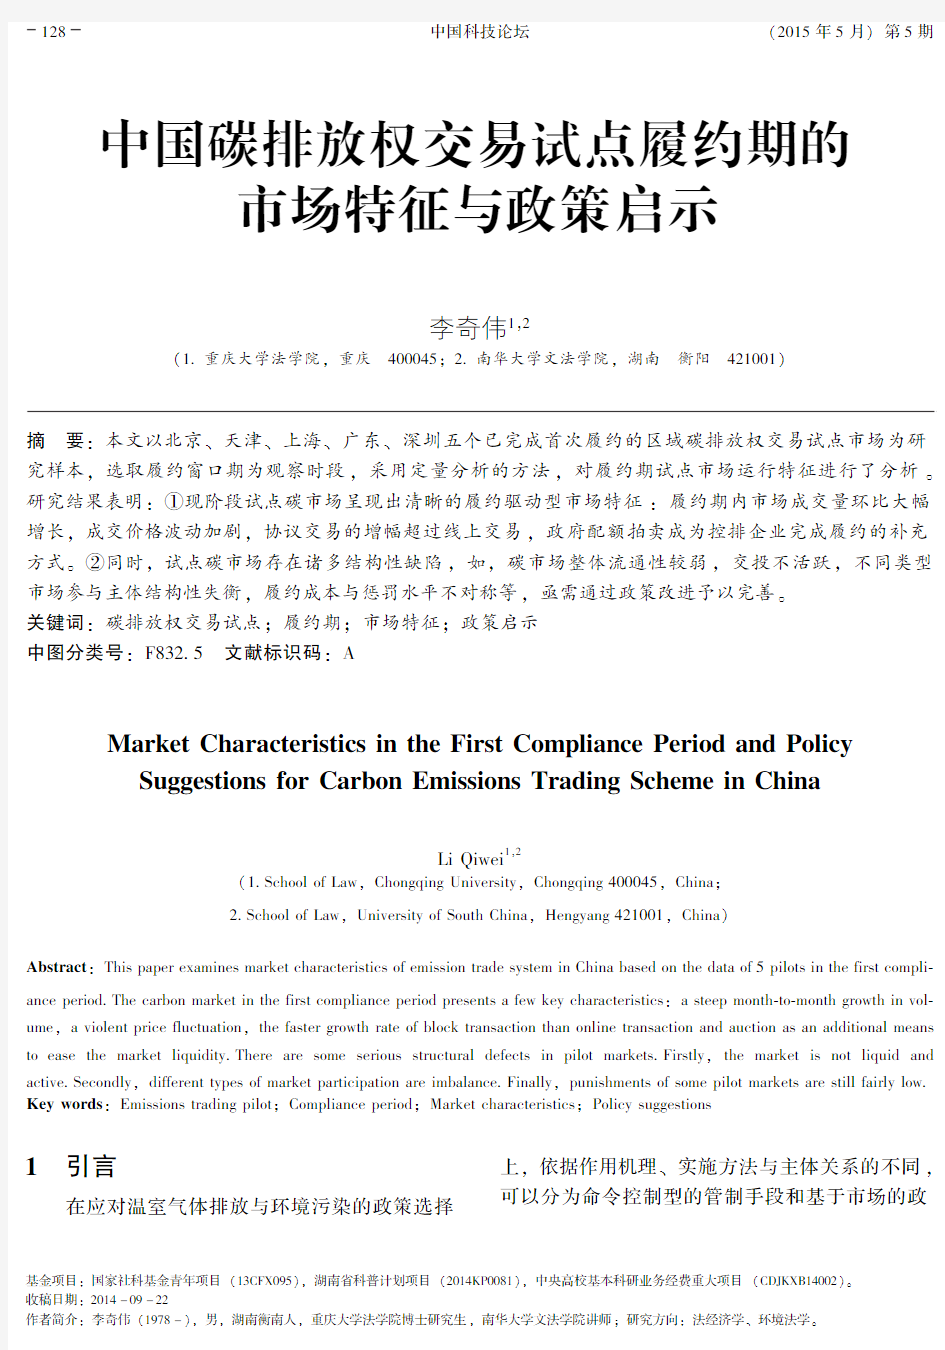 中国碳排放权交易试点履约期的市场特征与政策启示